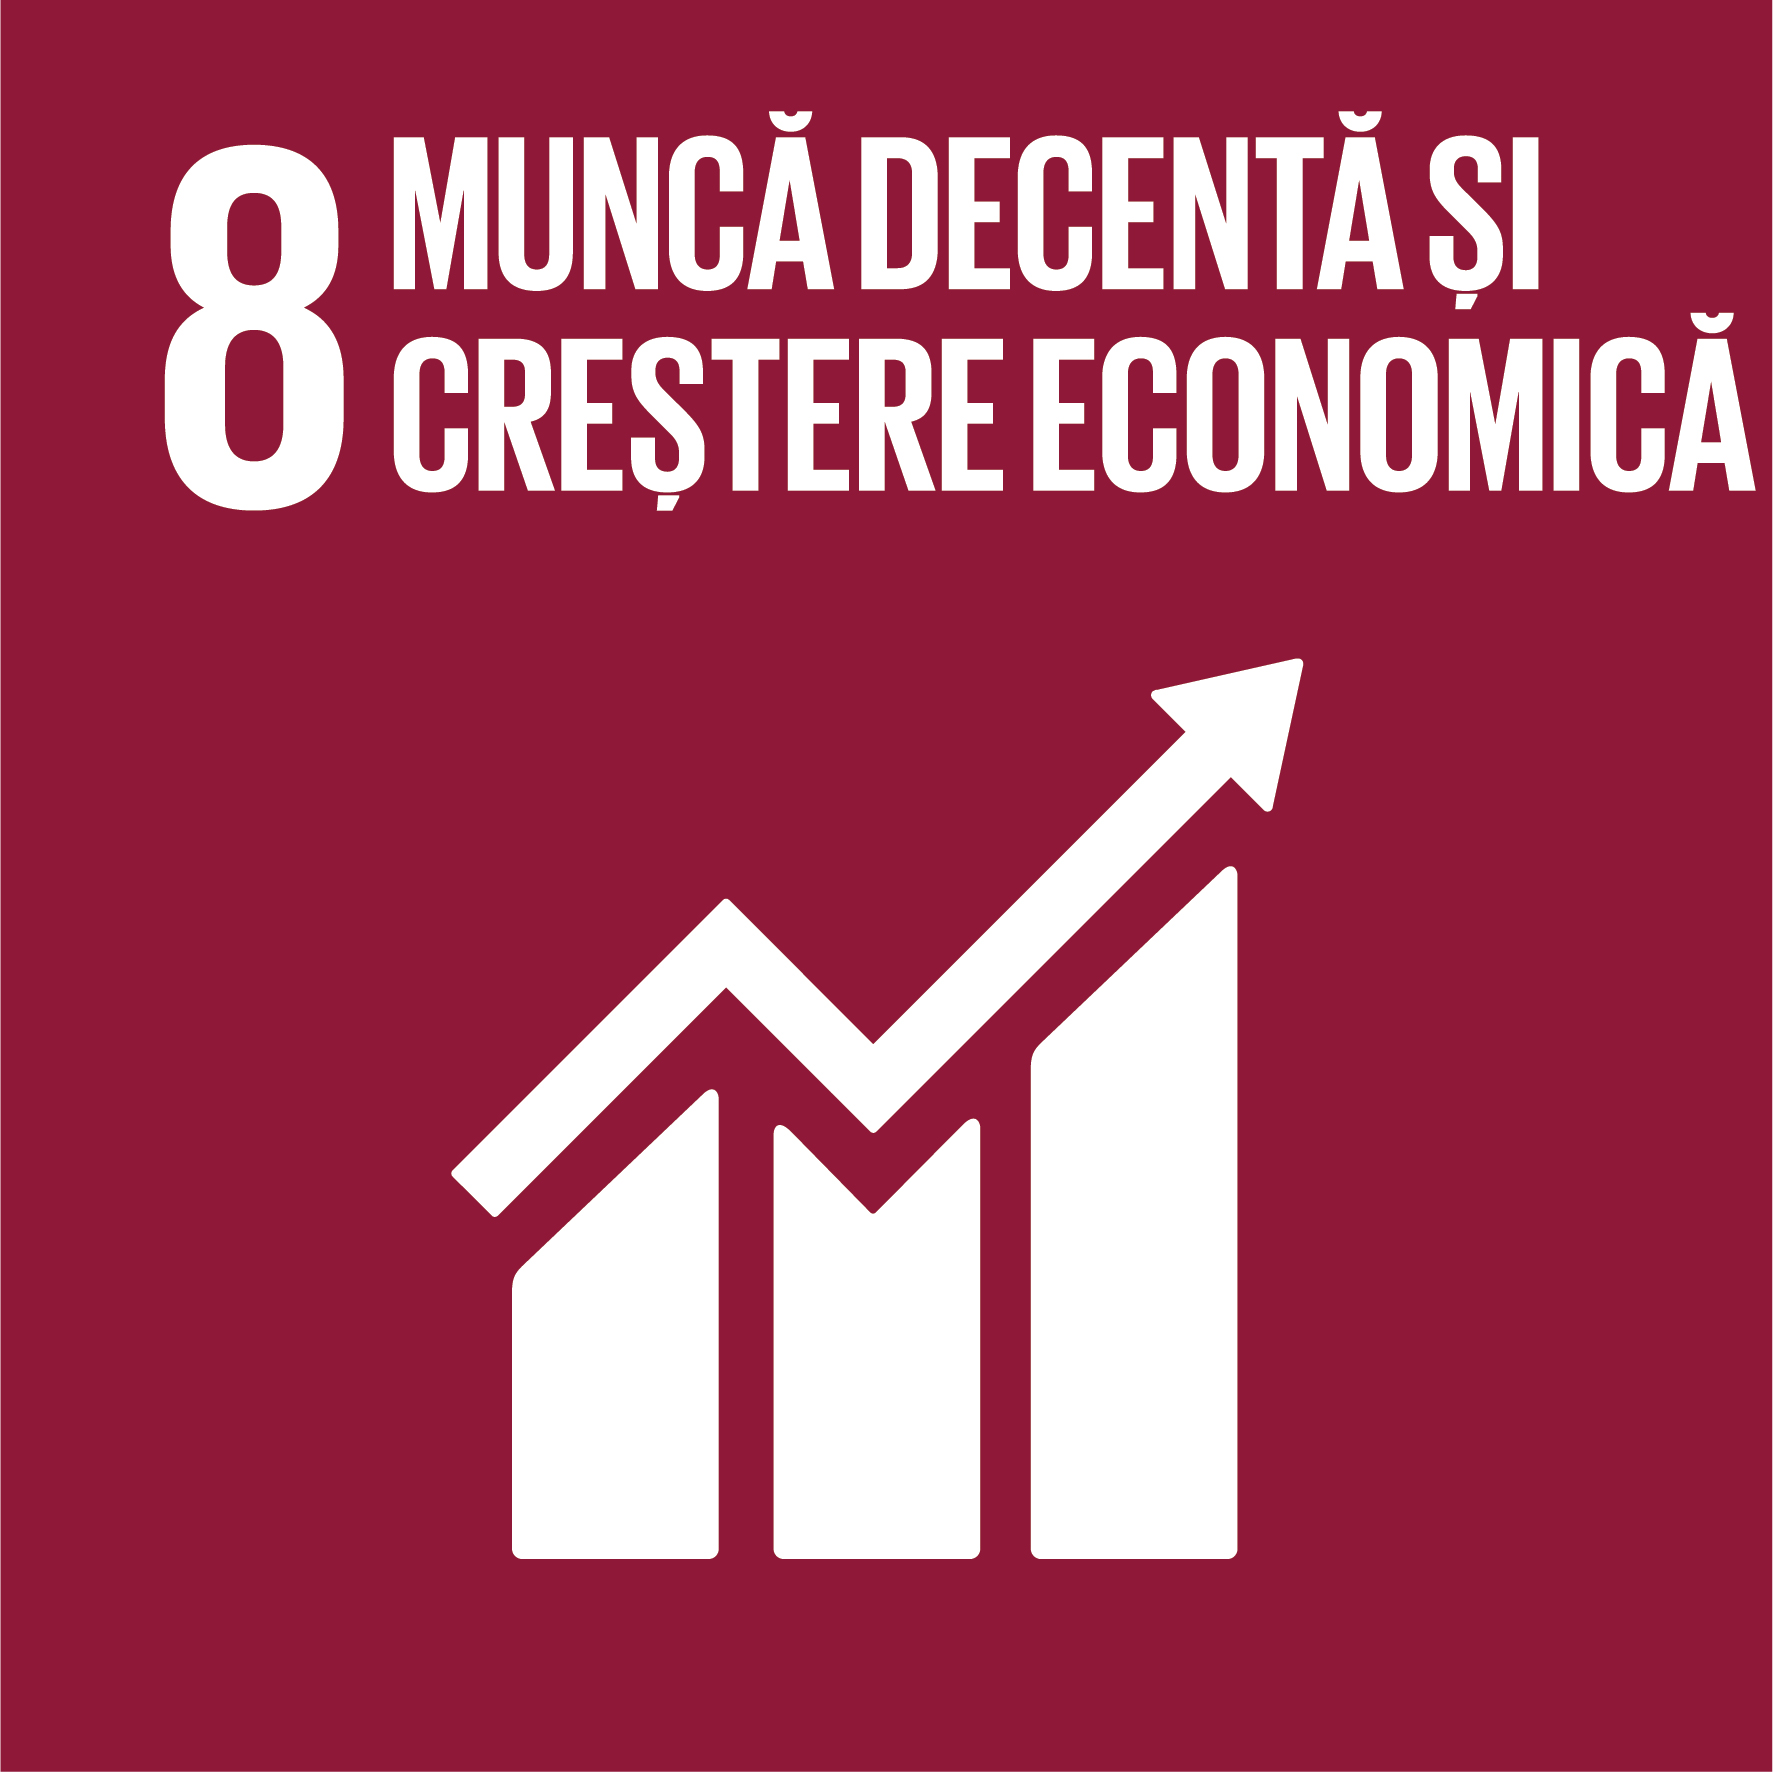 Muncă decentă și creștere economică - Obiectiv 8